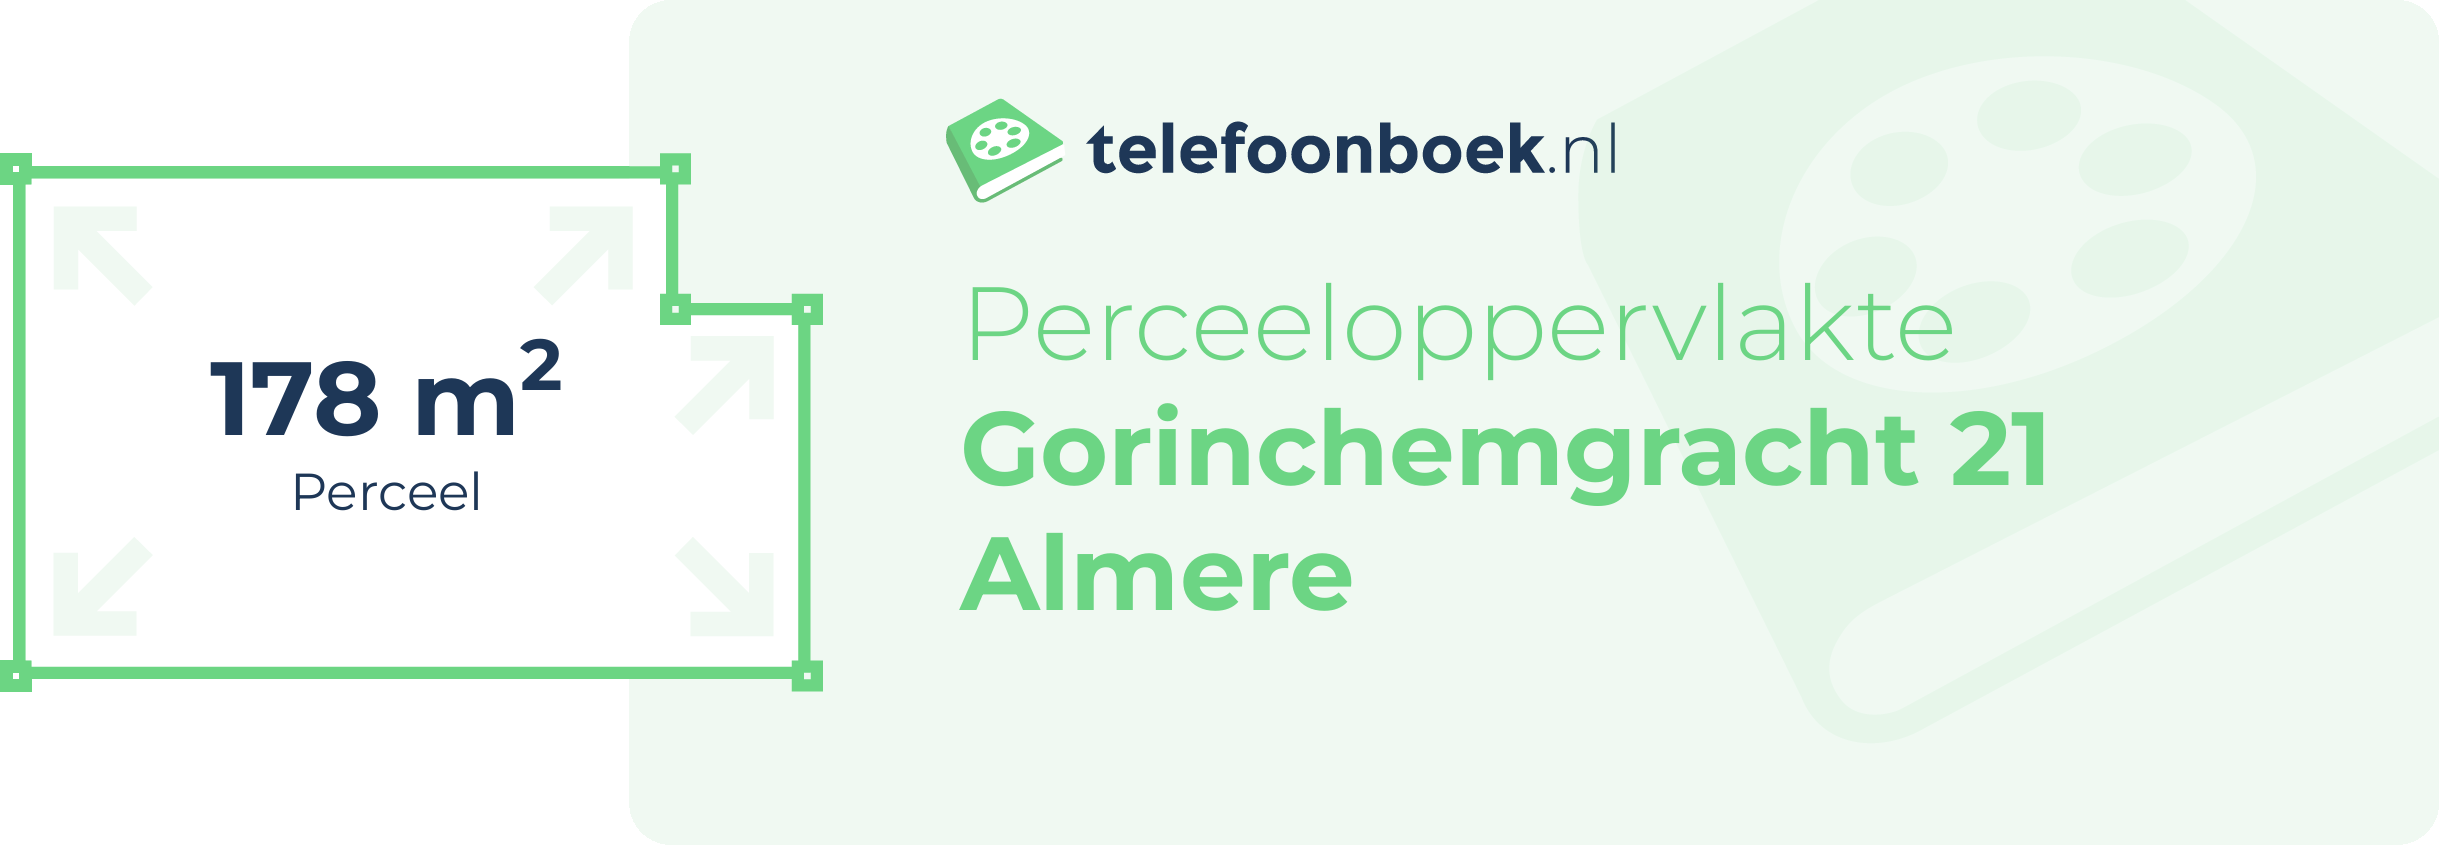 Perceeloppervlakte Gorinchemgracht 21 Almere